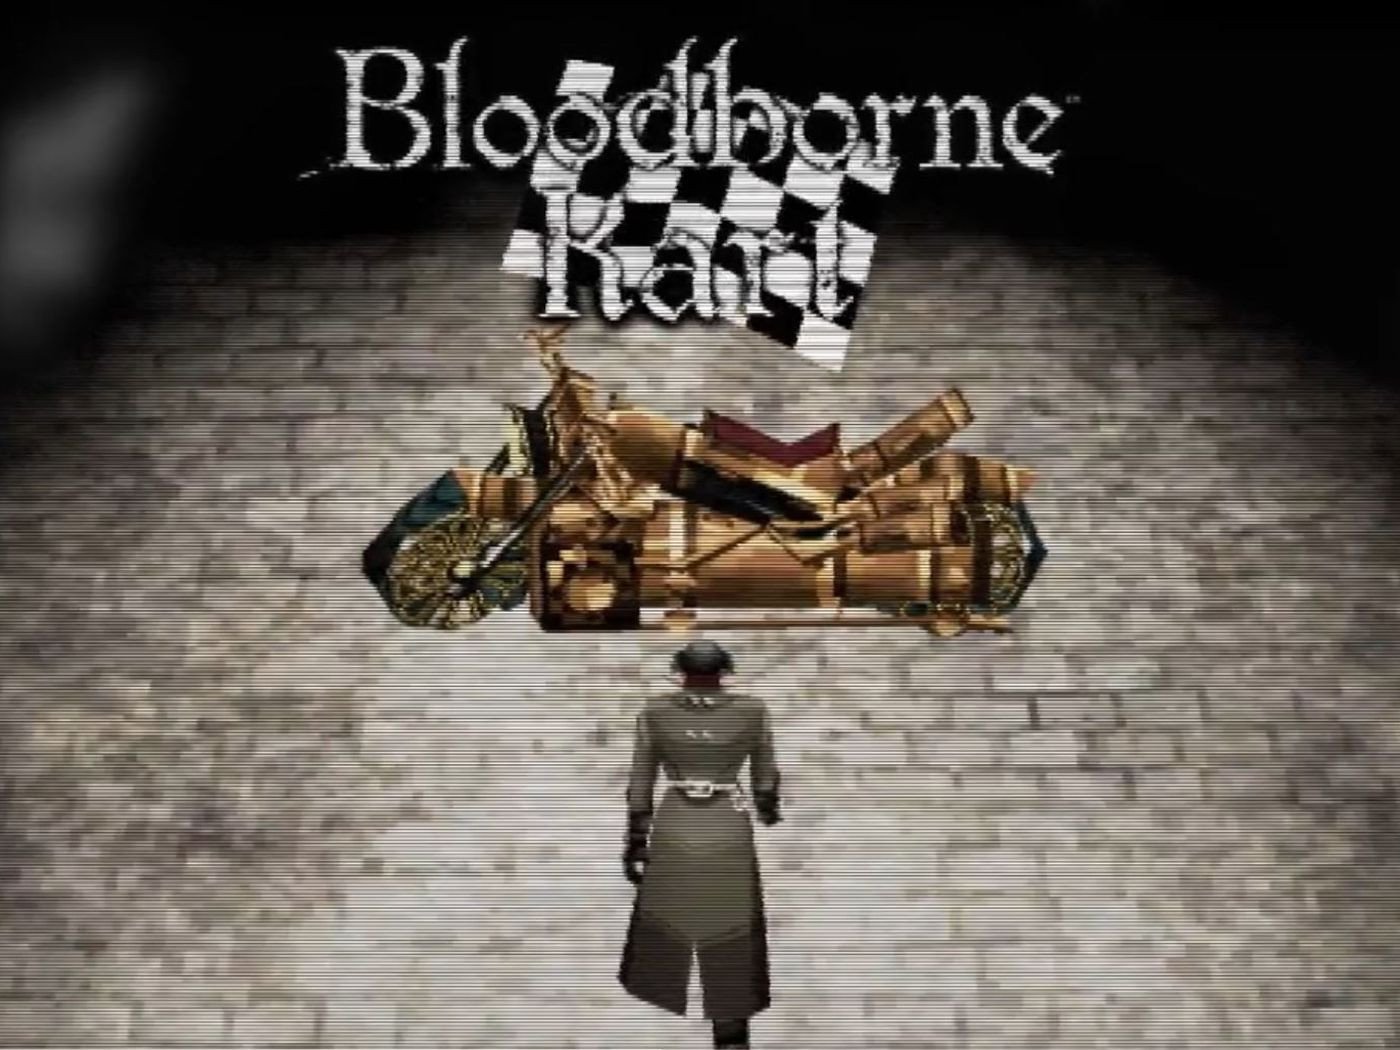 Immagine di Sony ferma il progetto Bloodborne Kart a pochi giorni dall'uscita